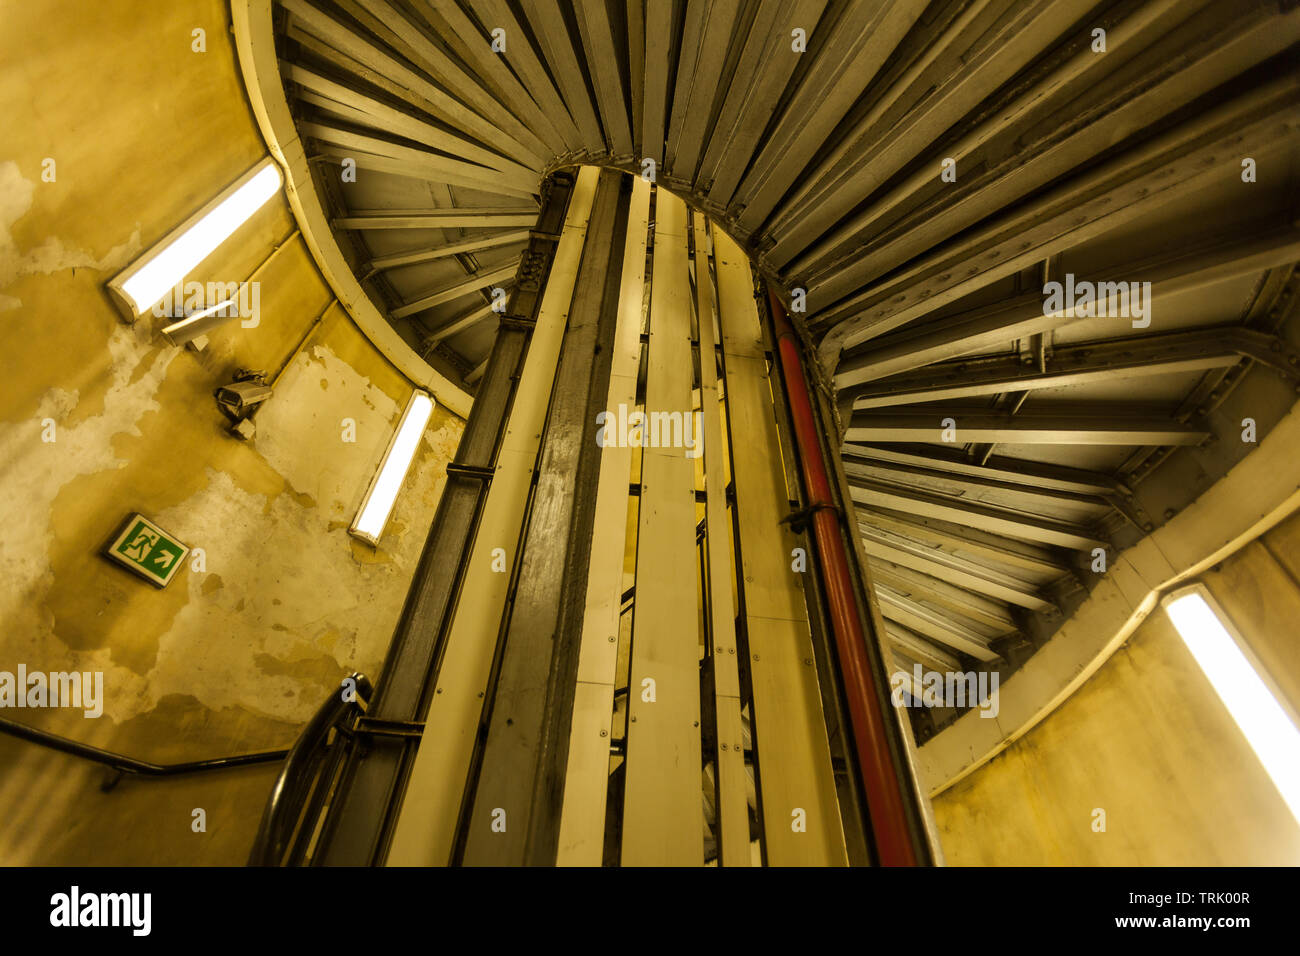 Escalier en spirale à la station de métro Queensway, Londres, Angleterre, Royaume-Uni. Banque D'Images